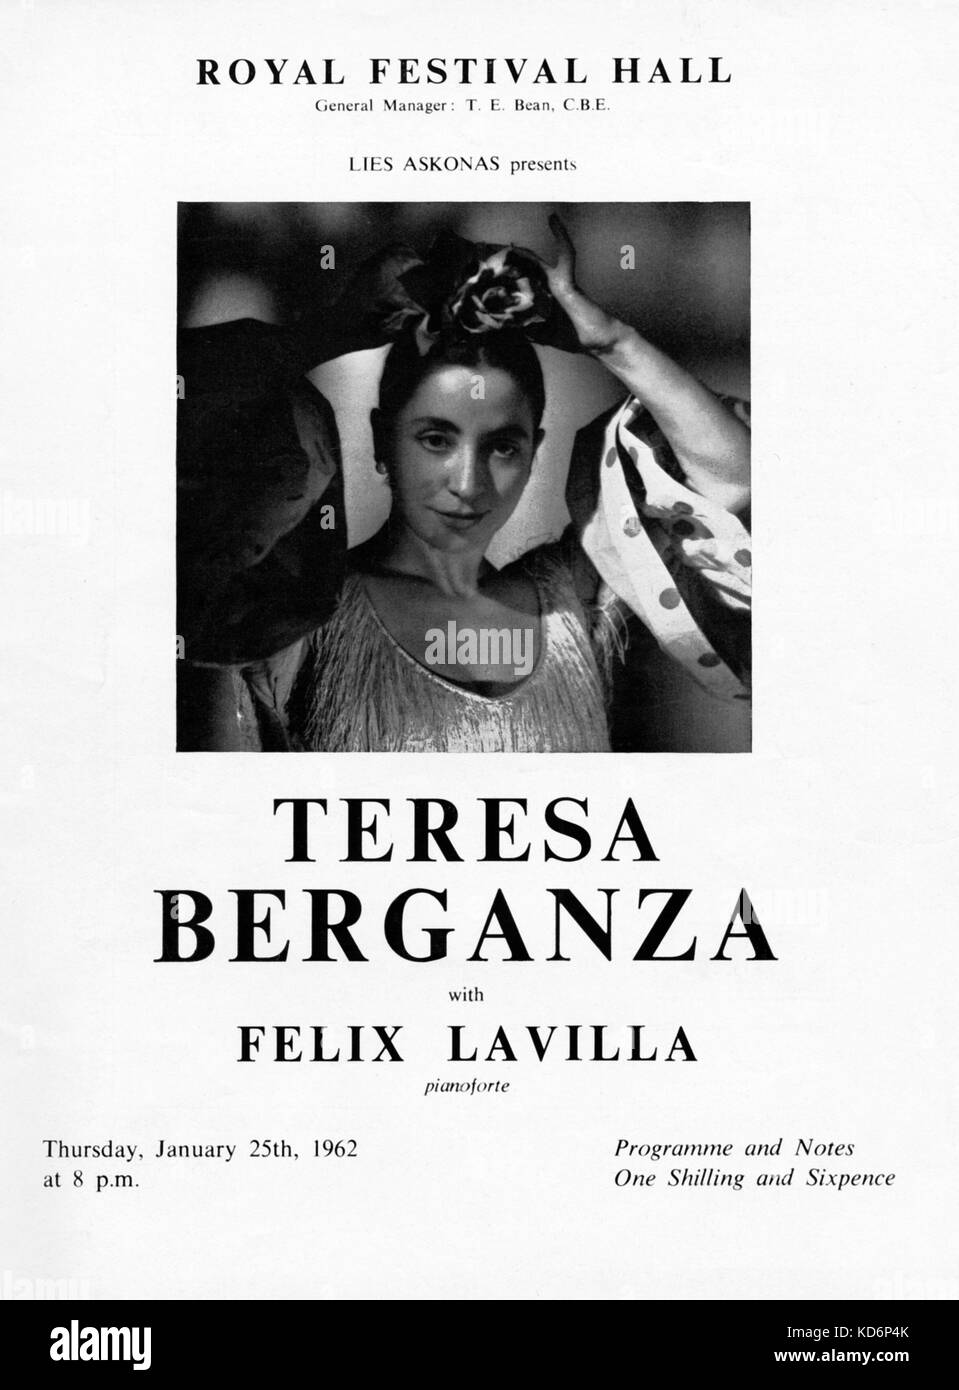 Teresa Berganza - ritratto della spagnola la cantante lirica sul coperchio del programma per un concerto presso la Royal Festival Hall di Londra con Felix Lavilla (marito), 25 gennaio 1962. TB: mezzo-soprano, b. Il 16 marzo 1935. FL: spagnolo di pianista. Foto Stock